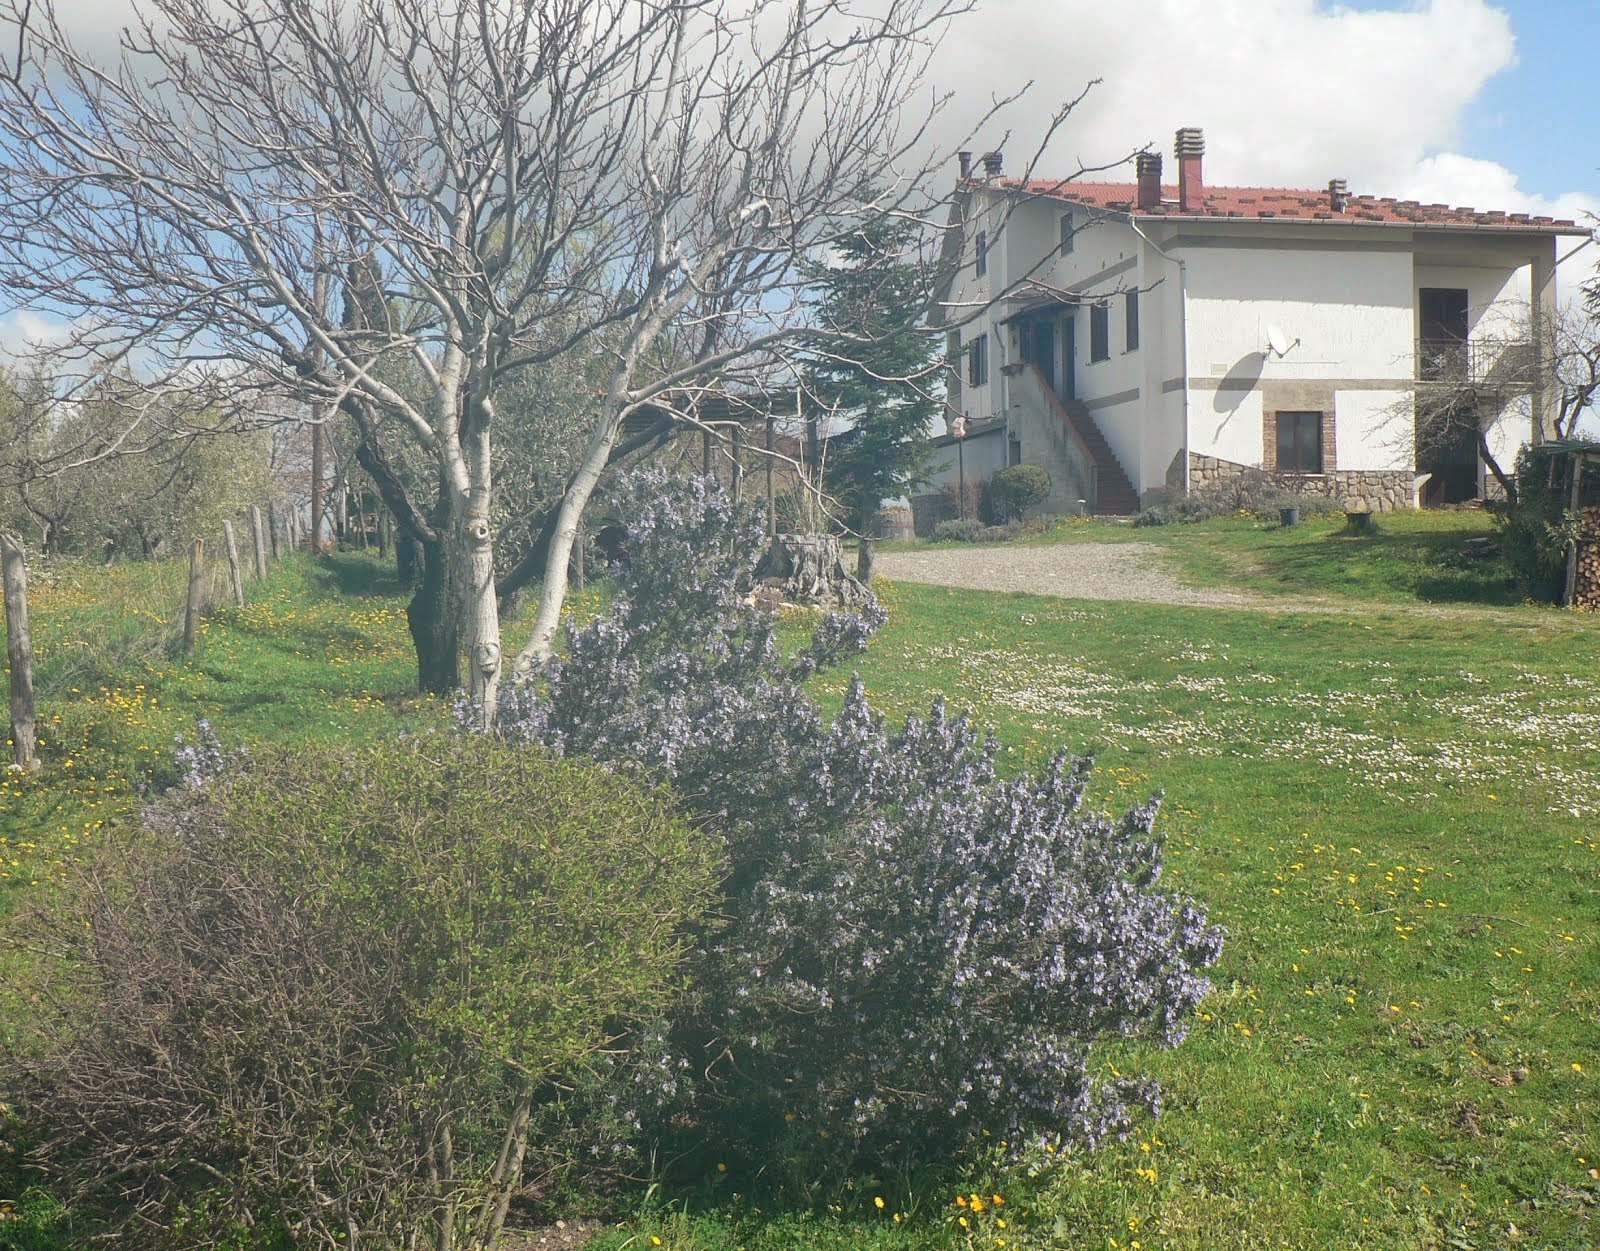 Benvenuta #Primavera #Toscana